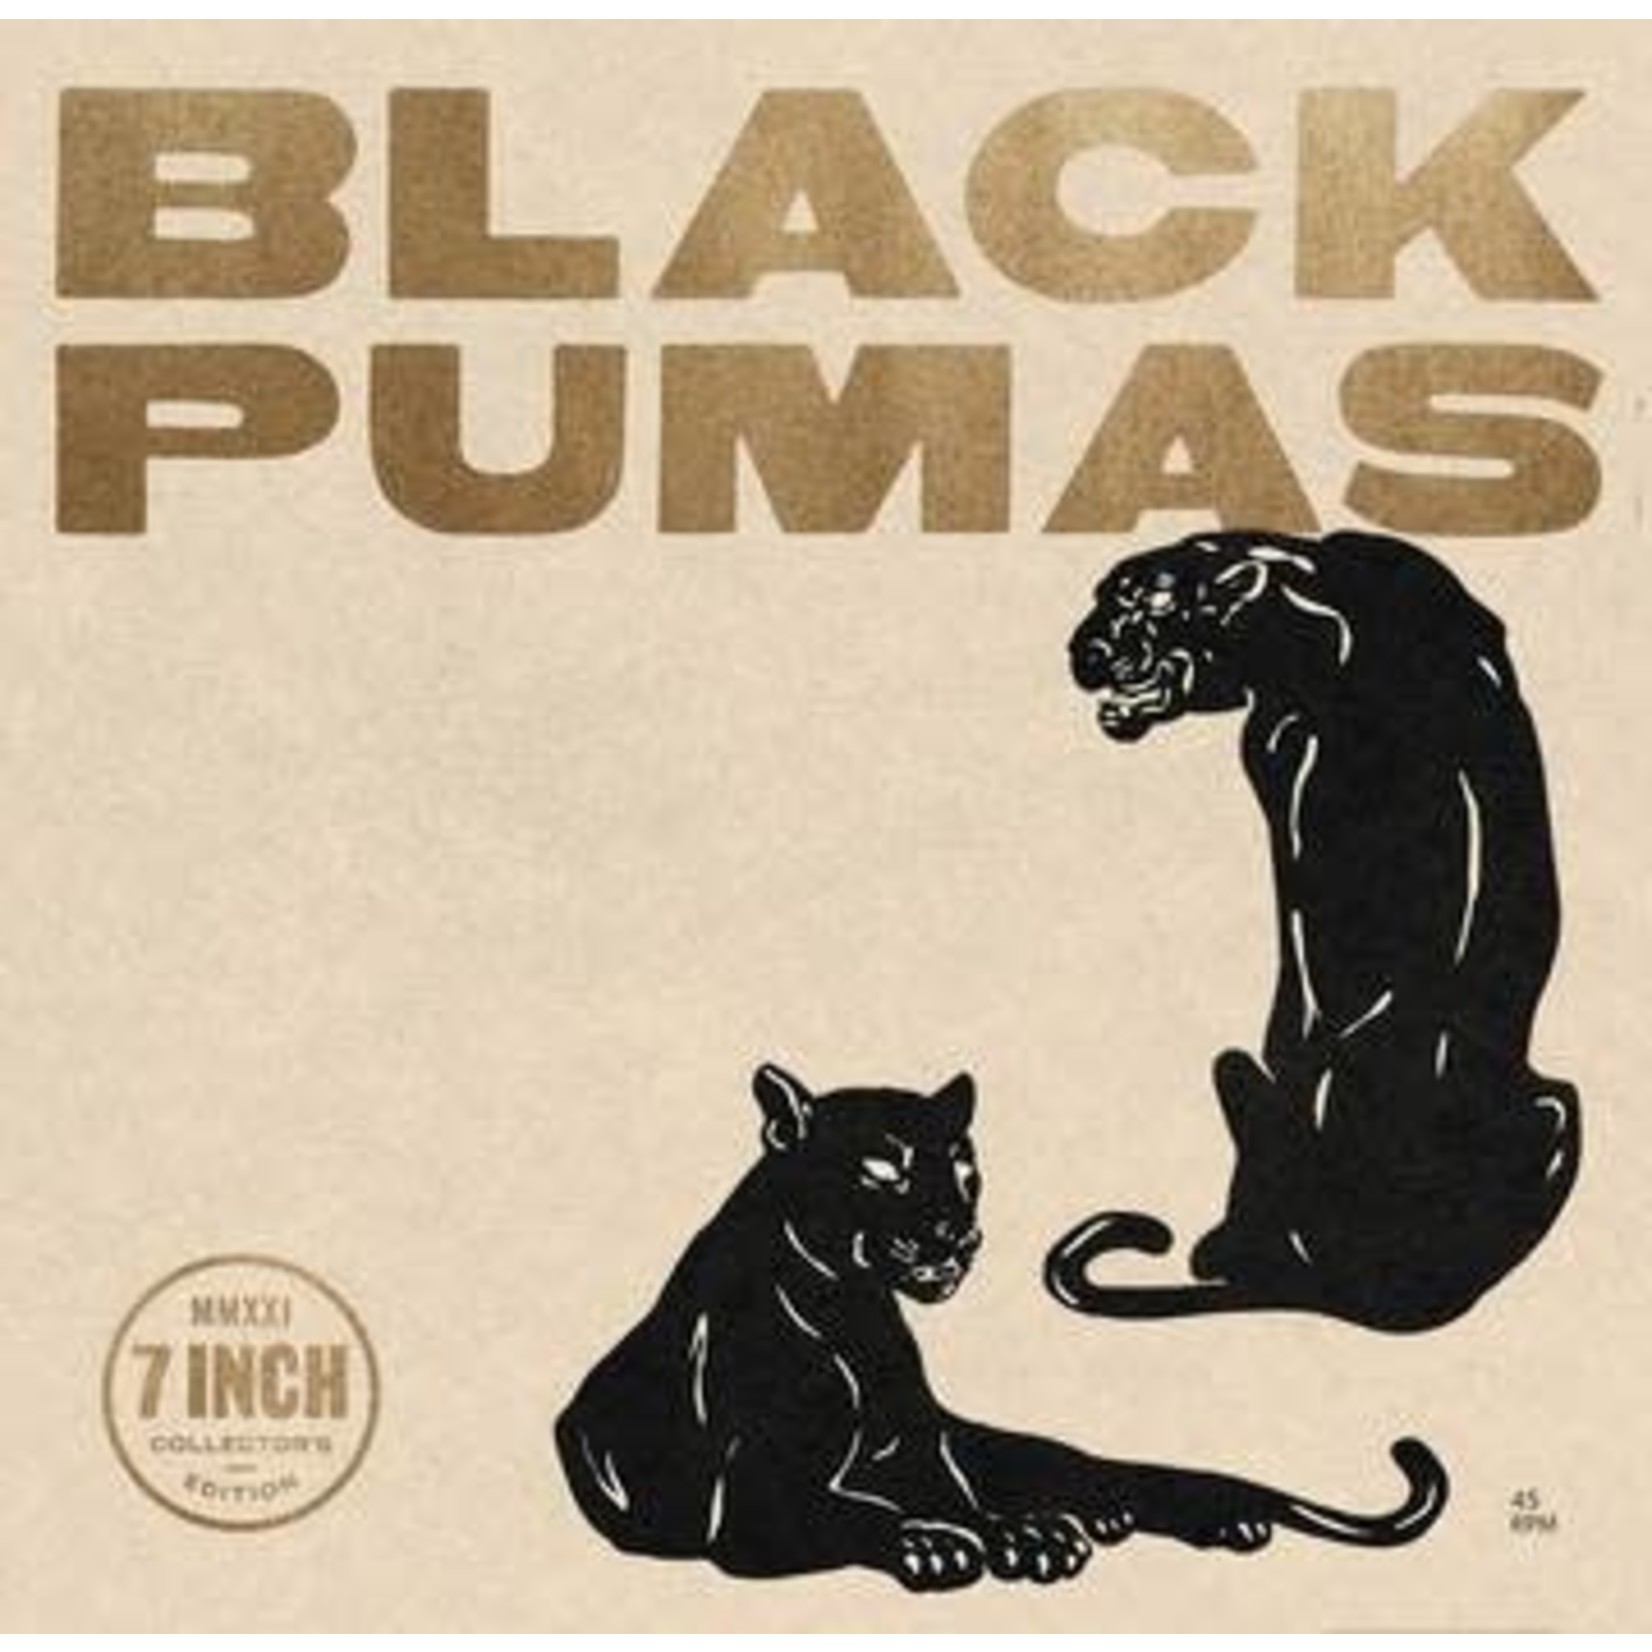 Record Store Day 2008-2023 Black Pumas - Black Pumas (6x7")